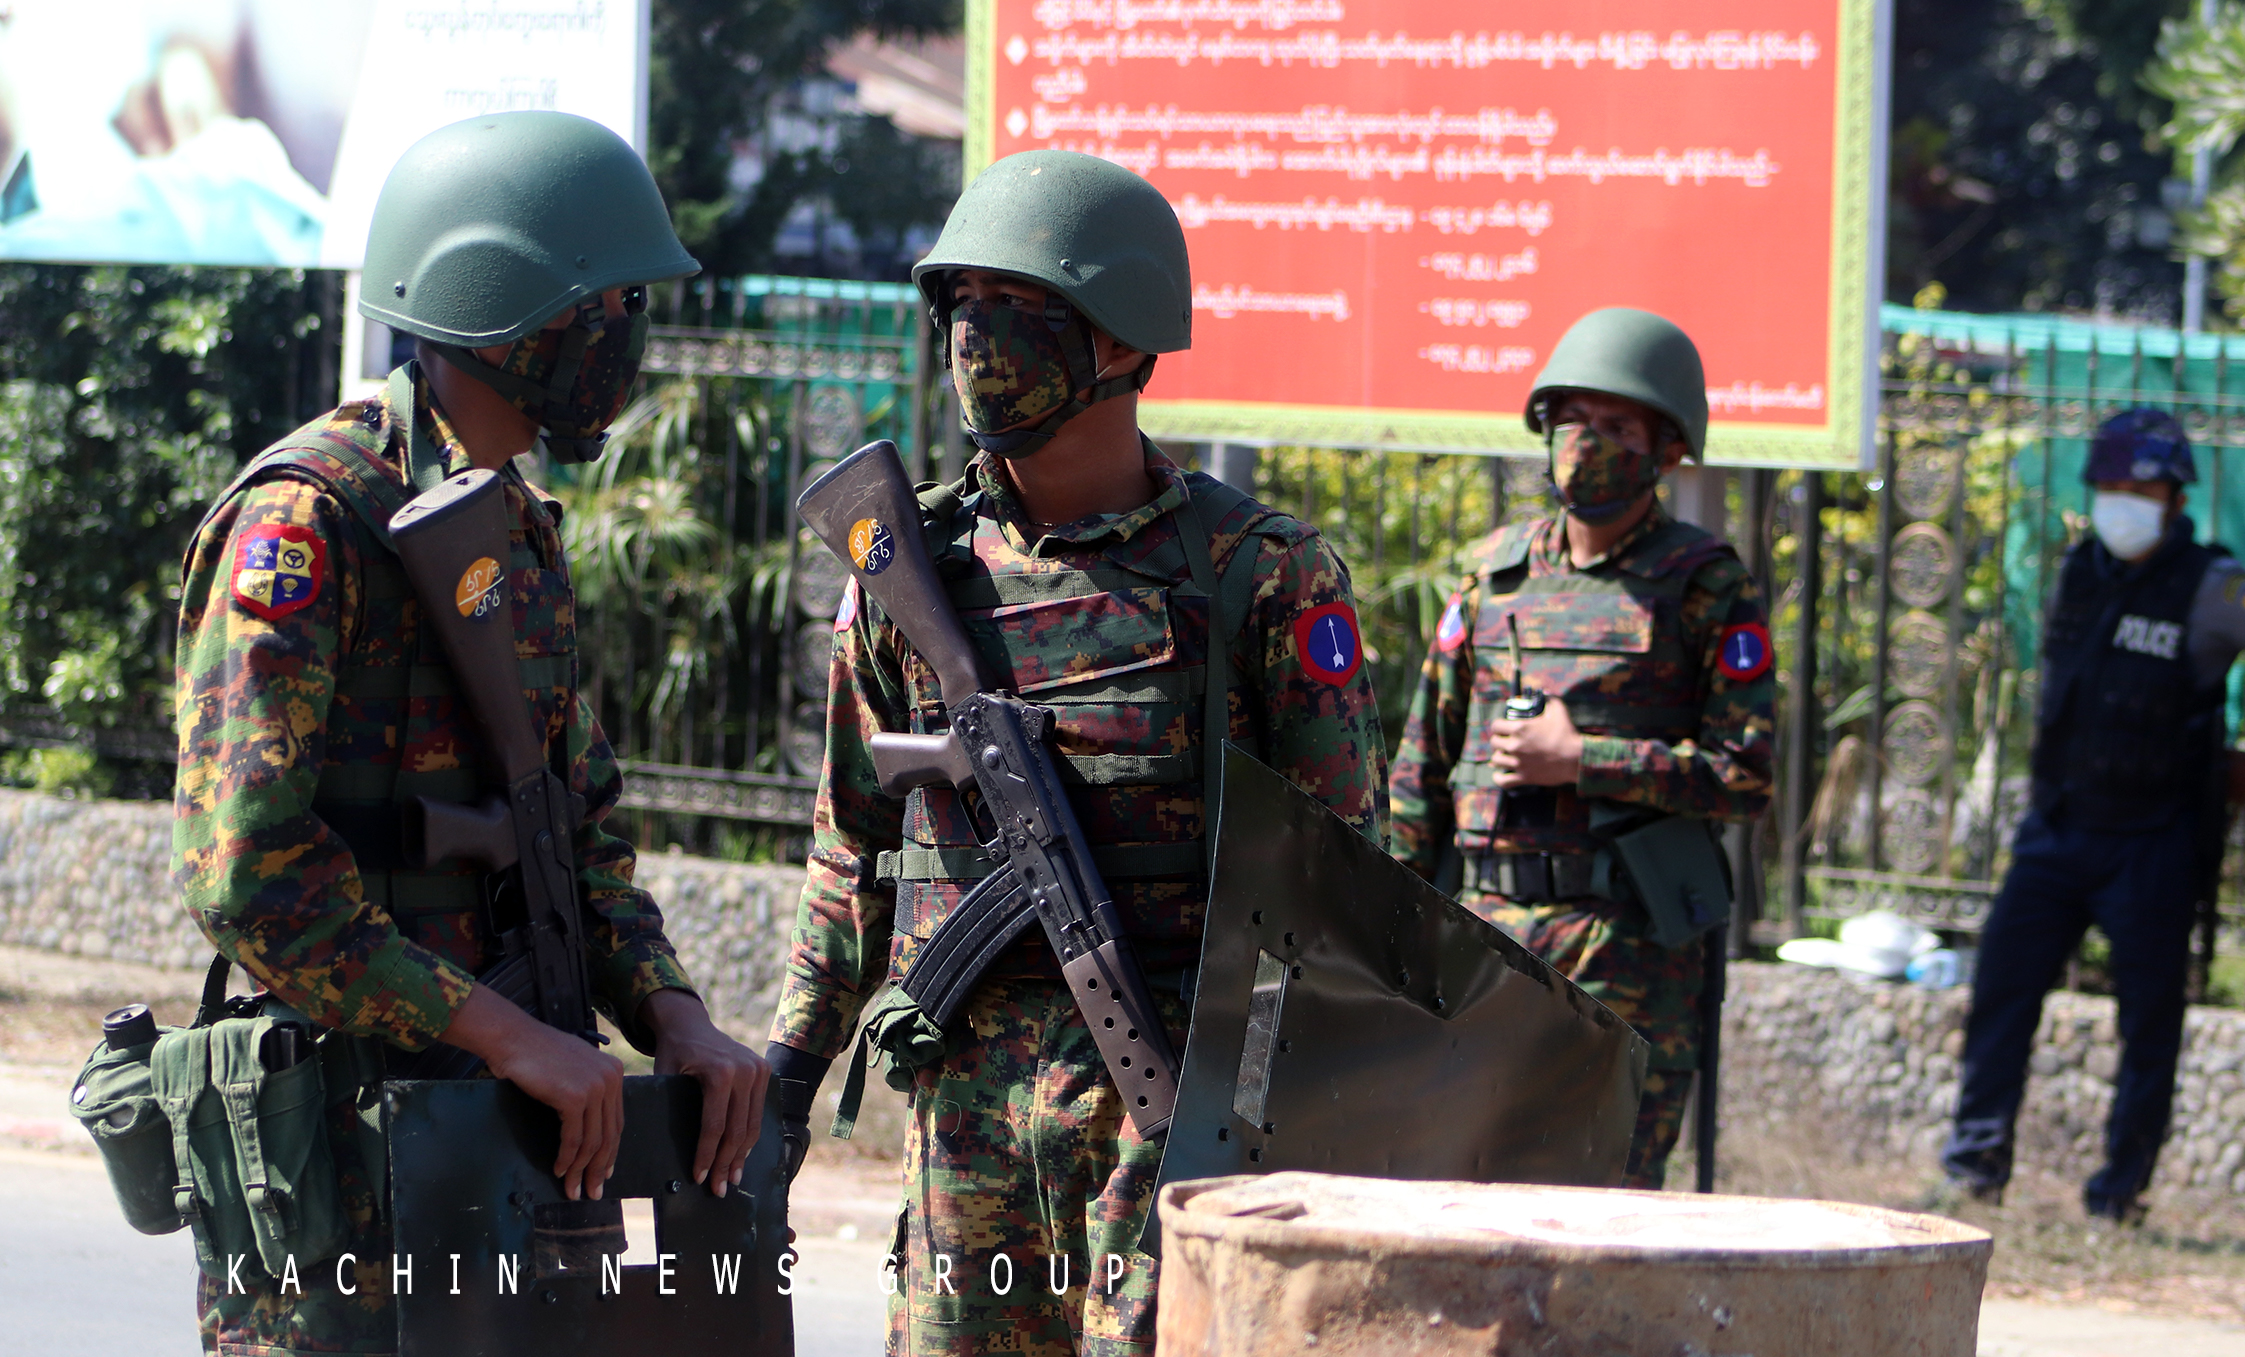 မိုးမောက်မြို့နယ်တွင် စစ်ကောင်စီတပ် အင်အား ၂၀၀ ကျော်ဖြင့် ထပ်တိုးလာသဖြင့် တိုက်ပွဲပြင်းထန်မည်ကို ဒေသခံများစိုးရိမ်နေ